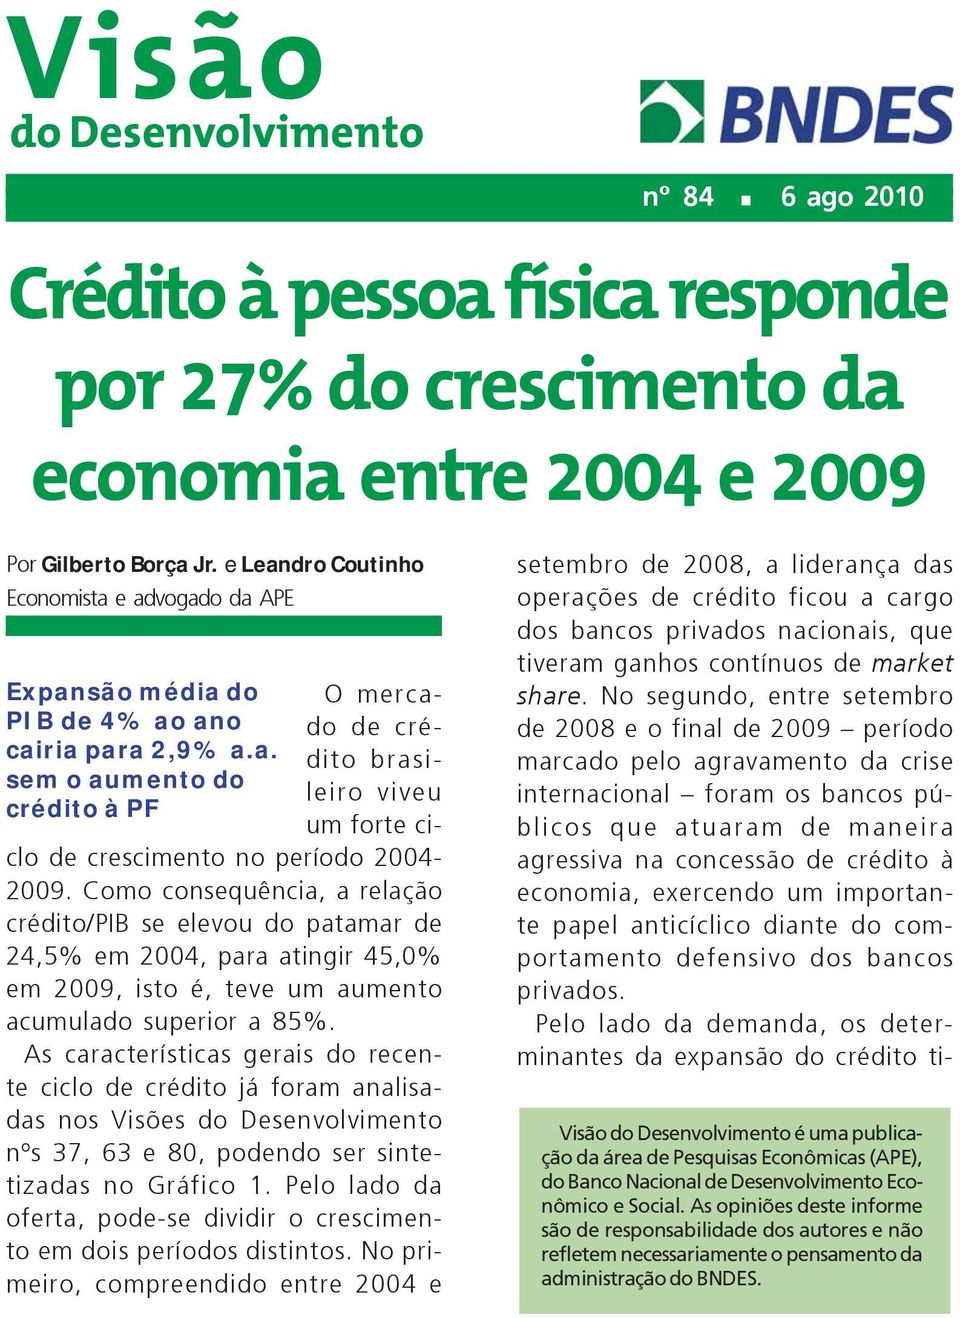 Como consequência, a relação crédito/pib se elevou do patamar de 24,5% em 2004, para atingir 45,0% em 2009, isto é, teve um aumento acumulado superior a 85%.